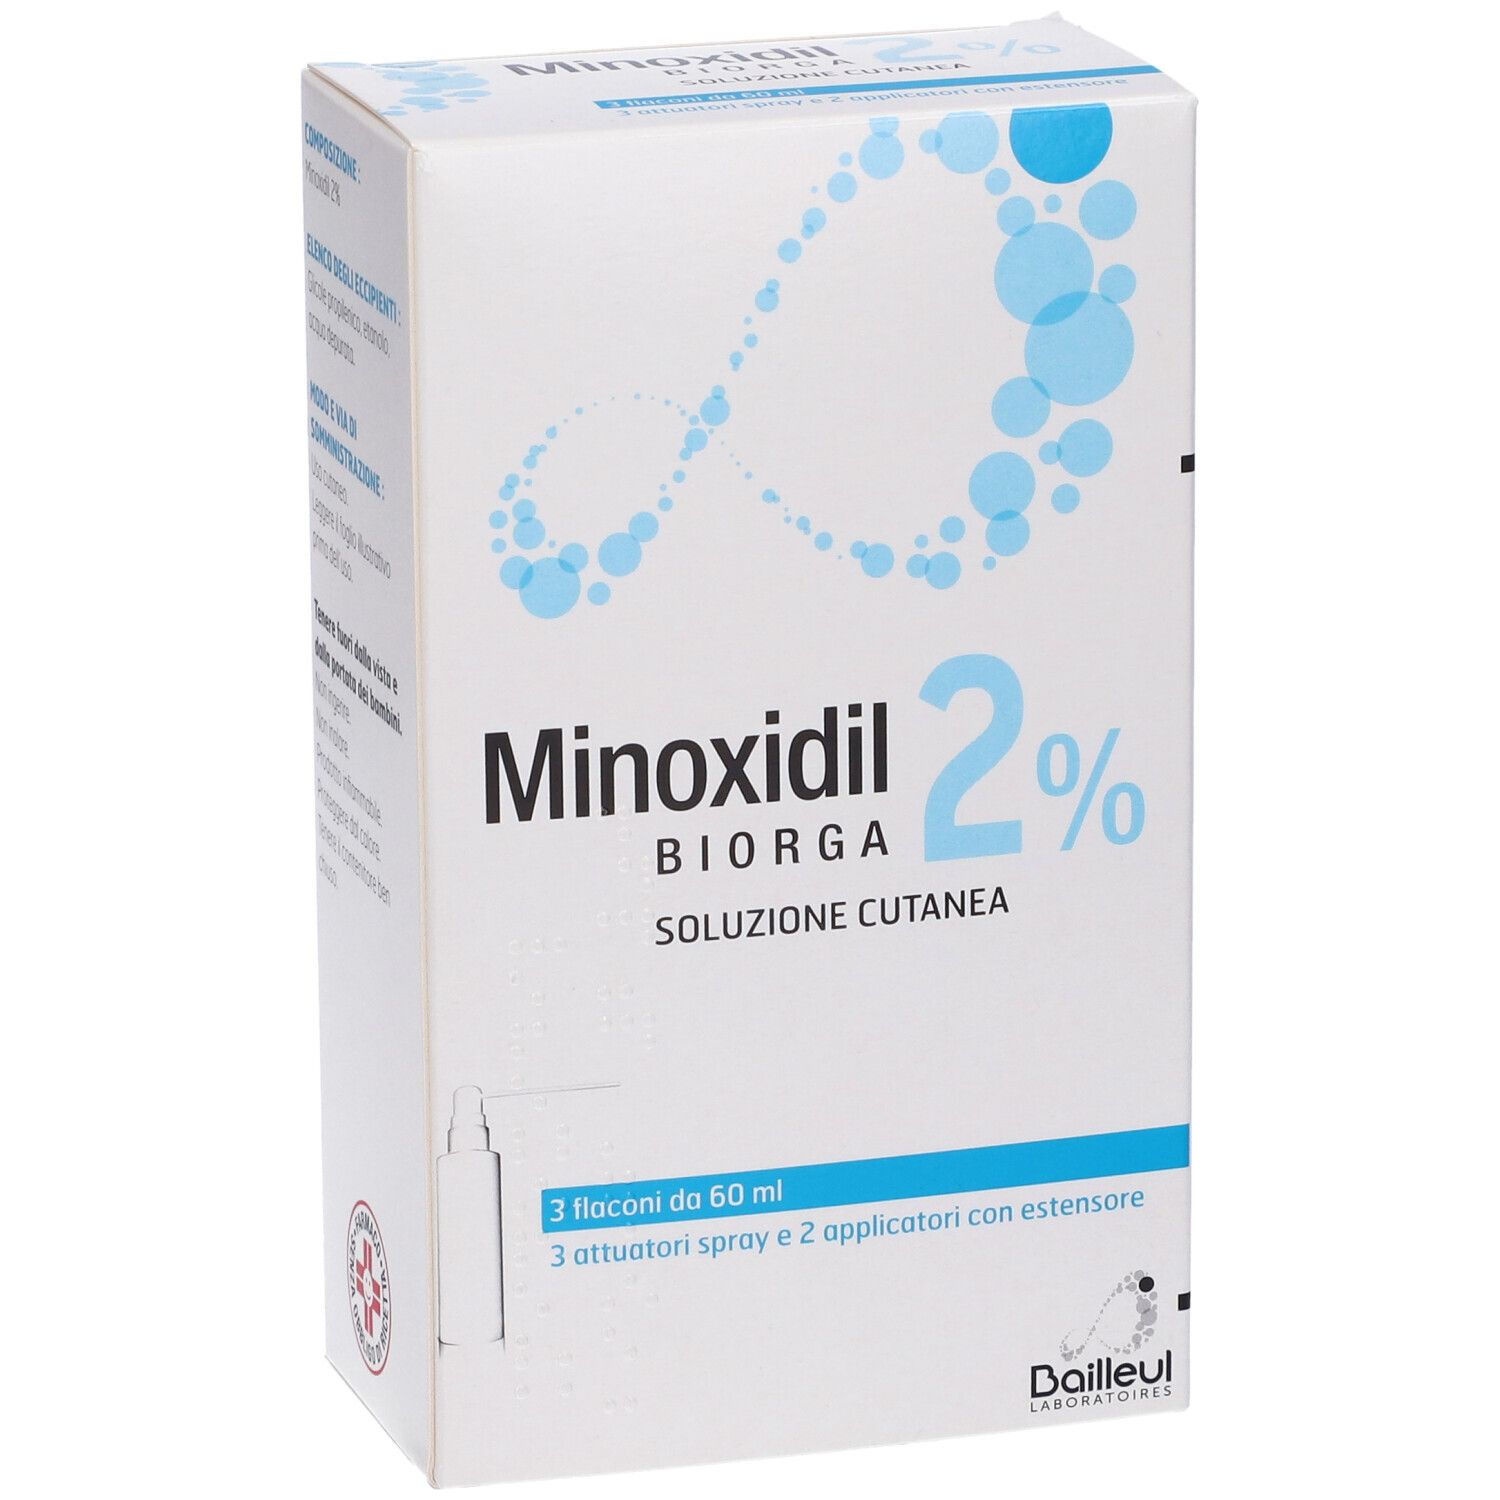 Minoxidil Biorga 2% Soluzione Cutanea 3 x 60ml